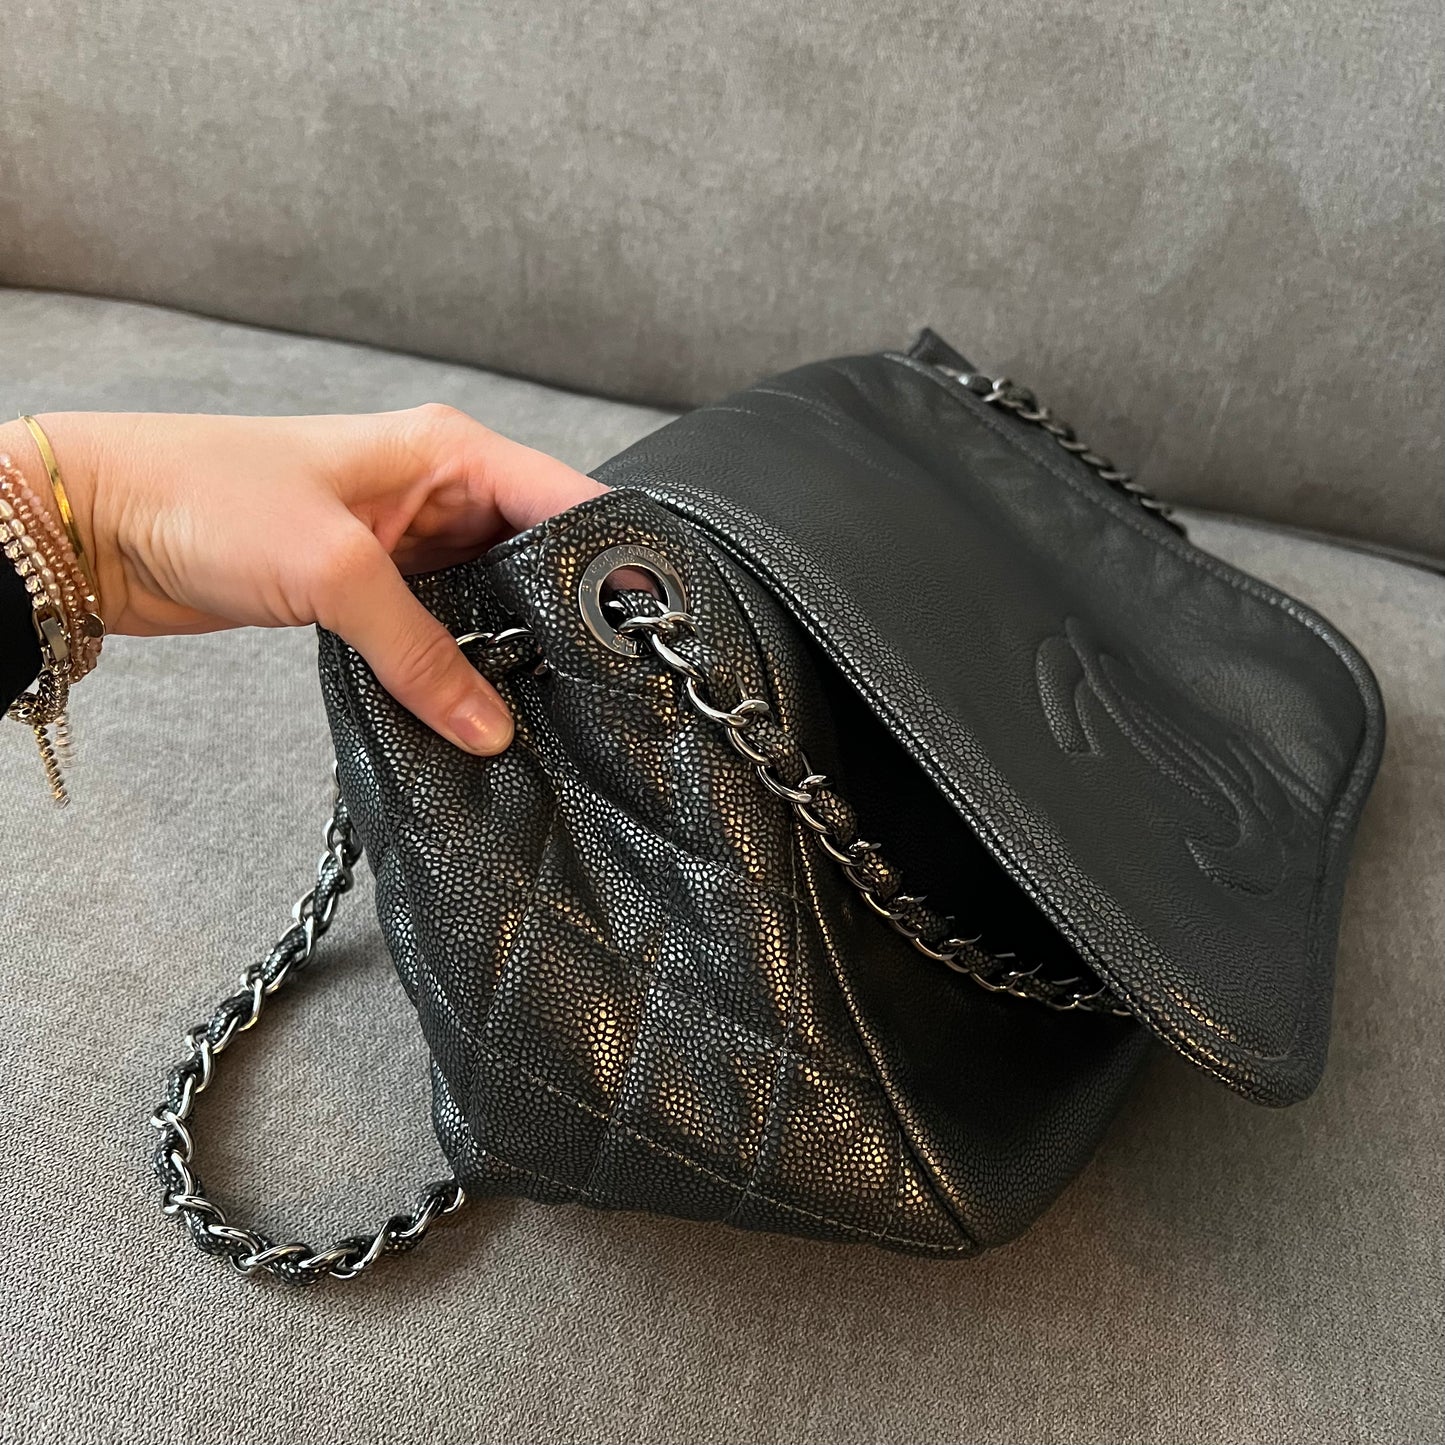 Chanel Caviar Acordian Maxi Flap Bag